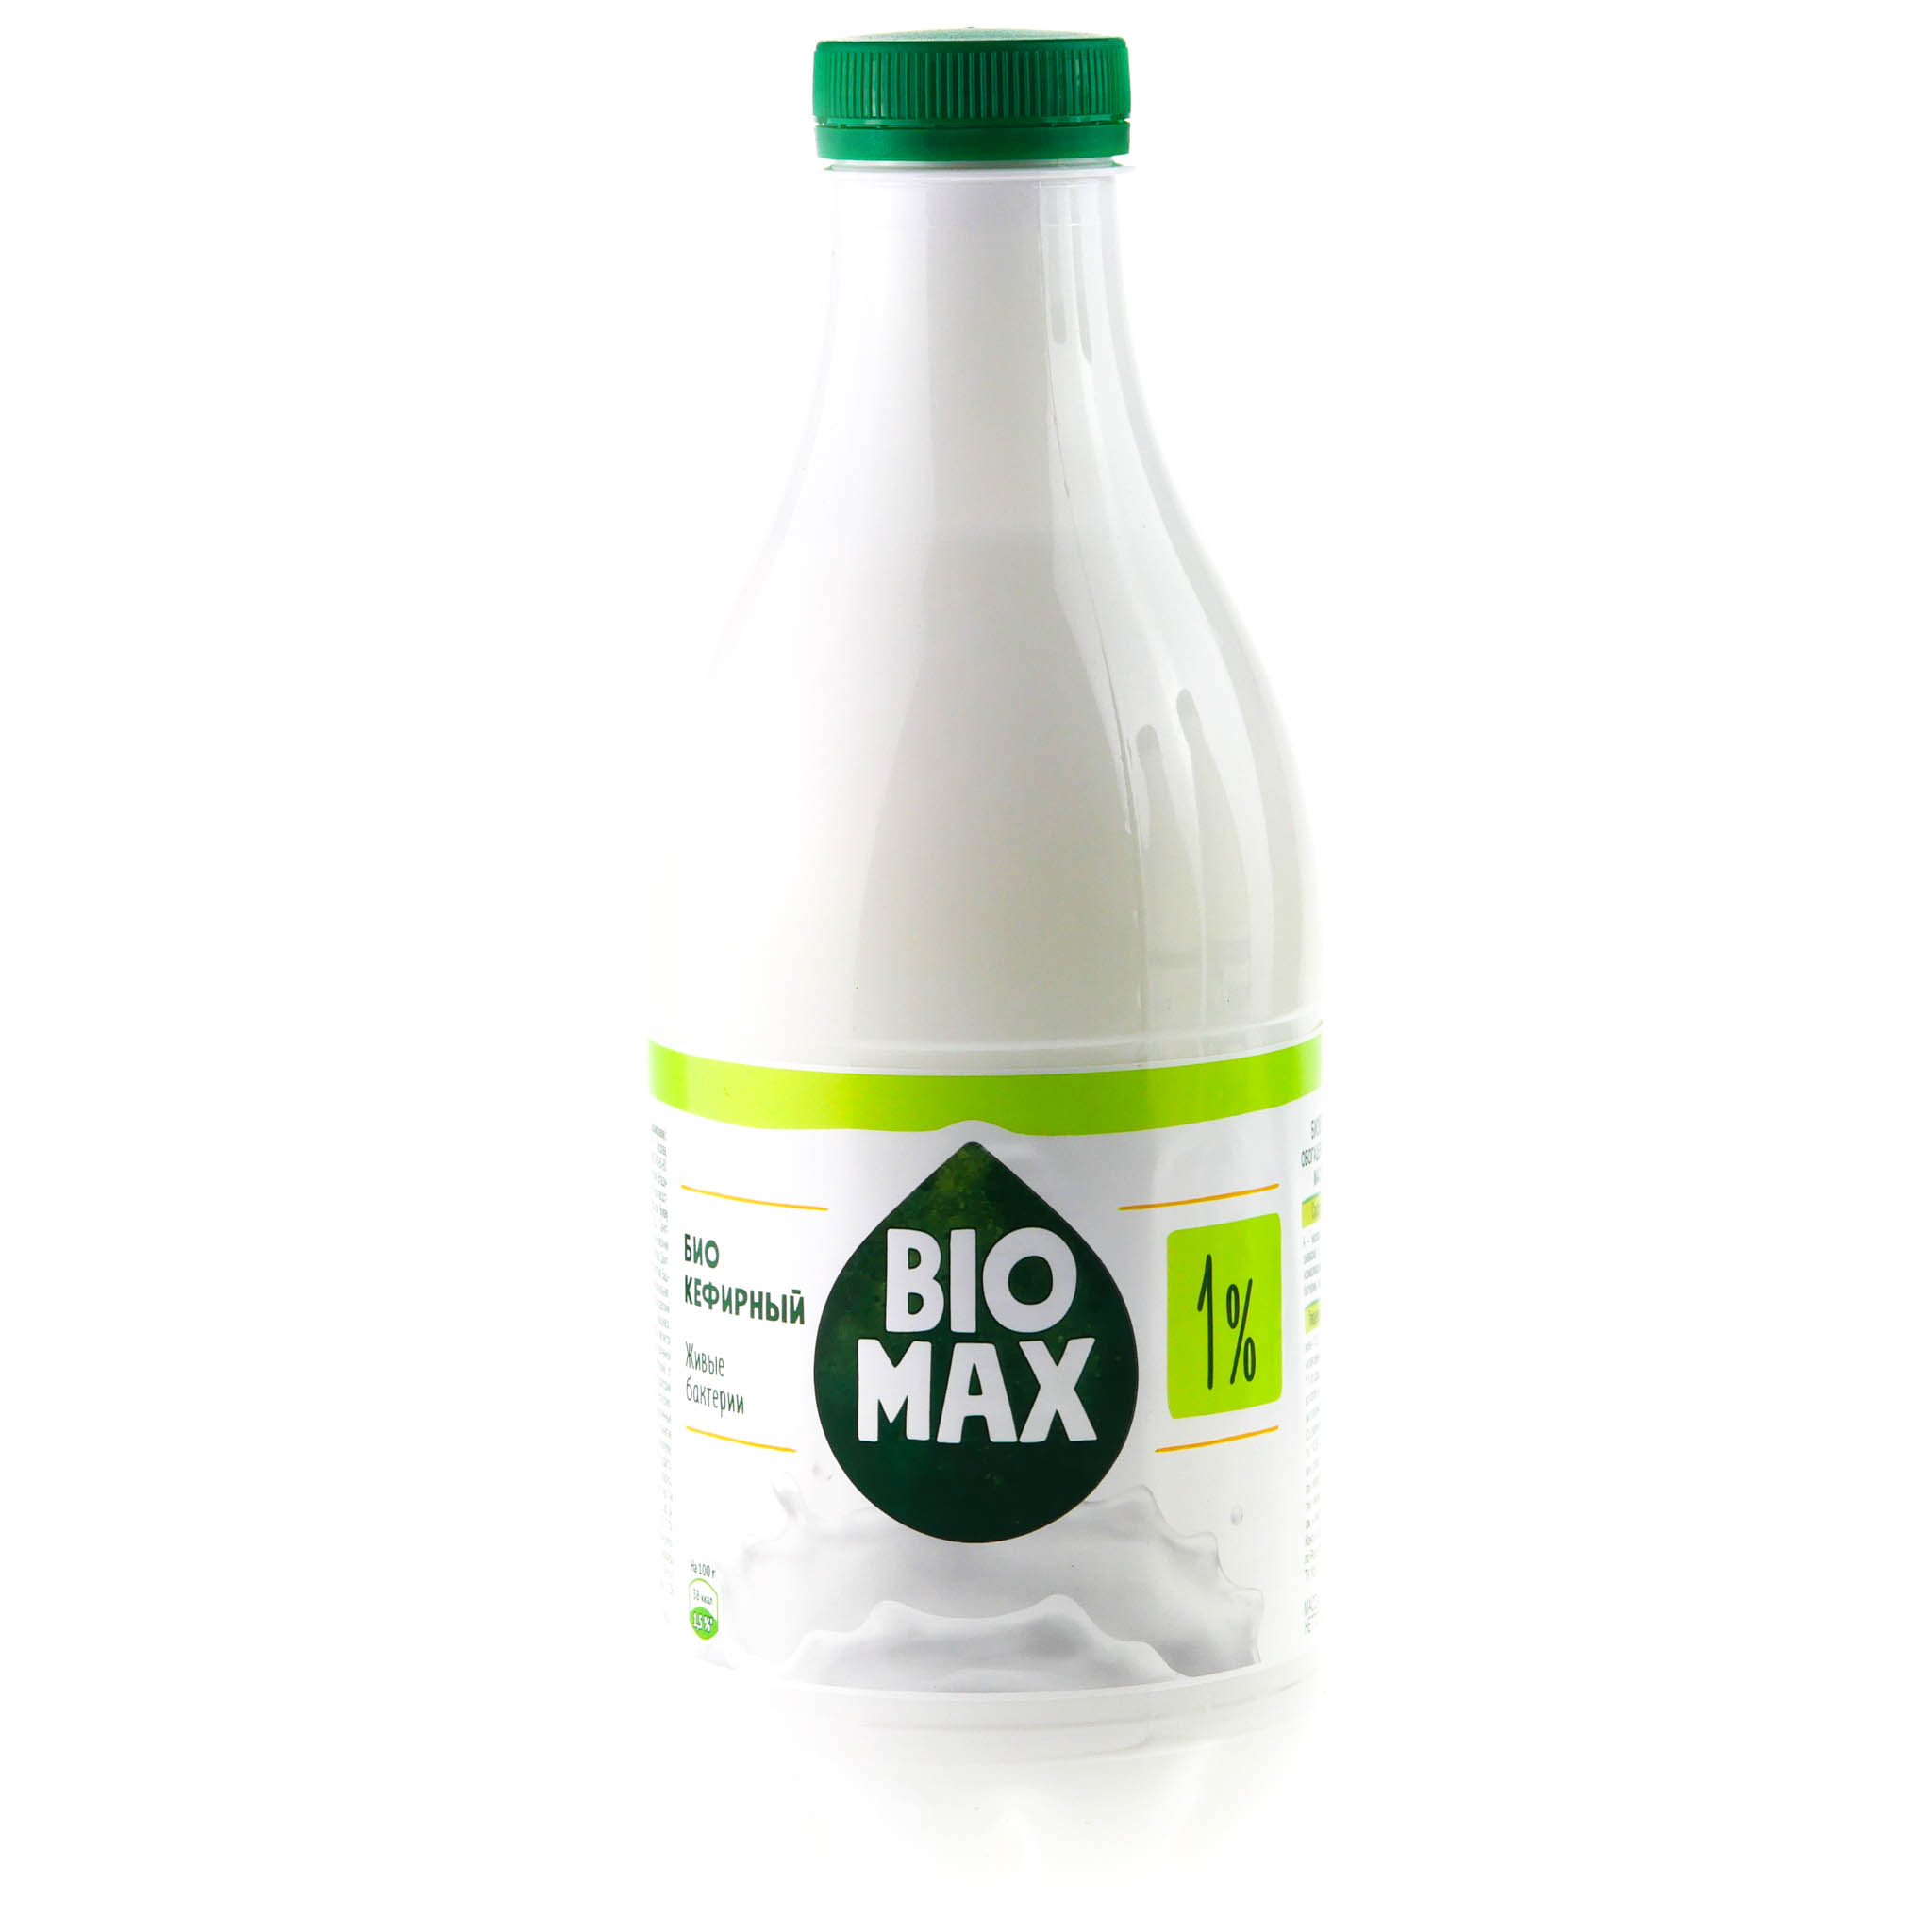 Продукт биокефирный BioMax 1%, 950 г